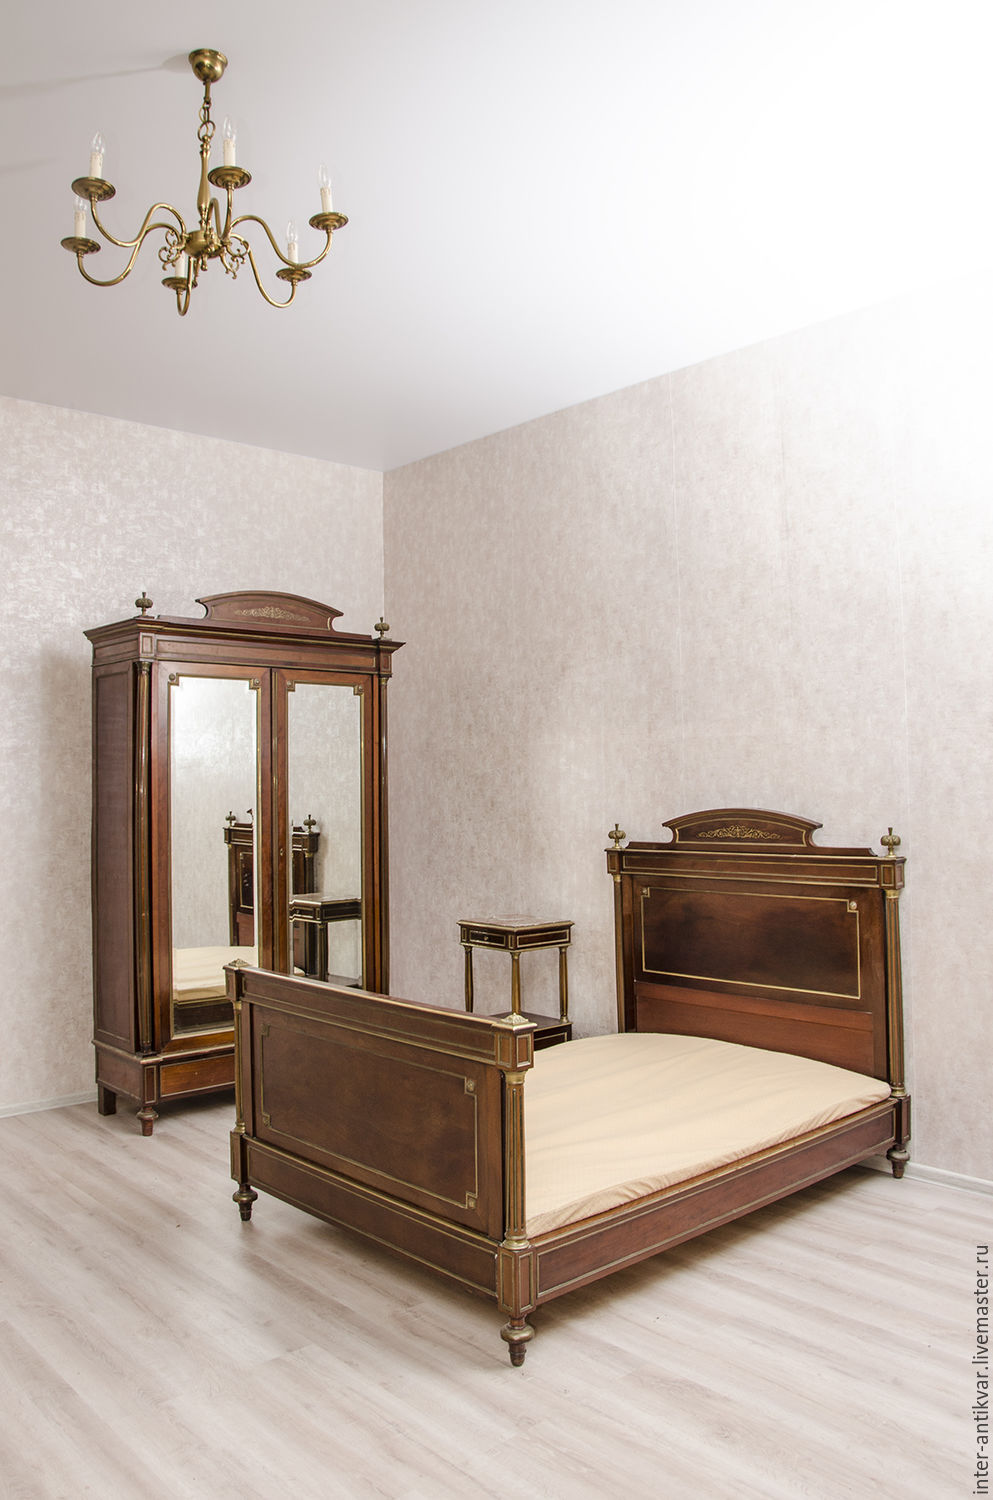 Румынская спальня Людовик